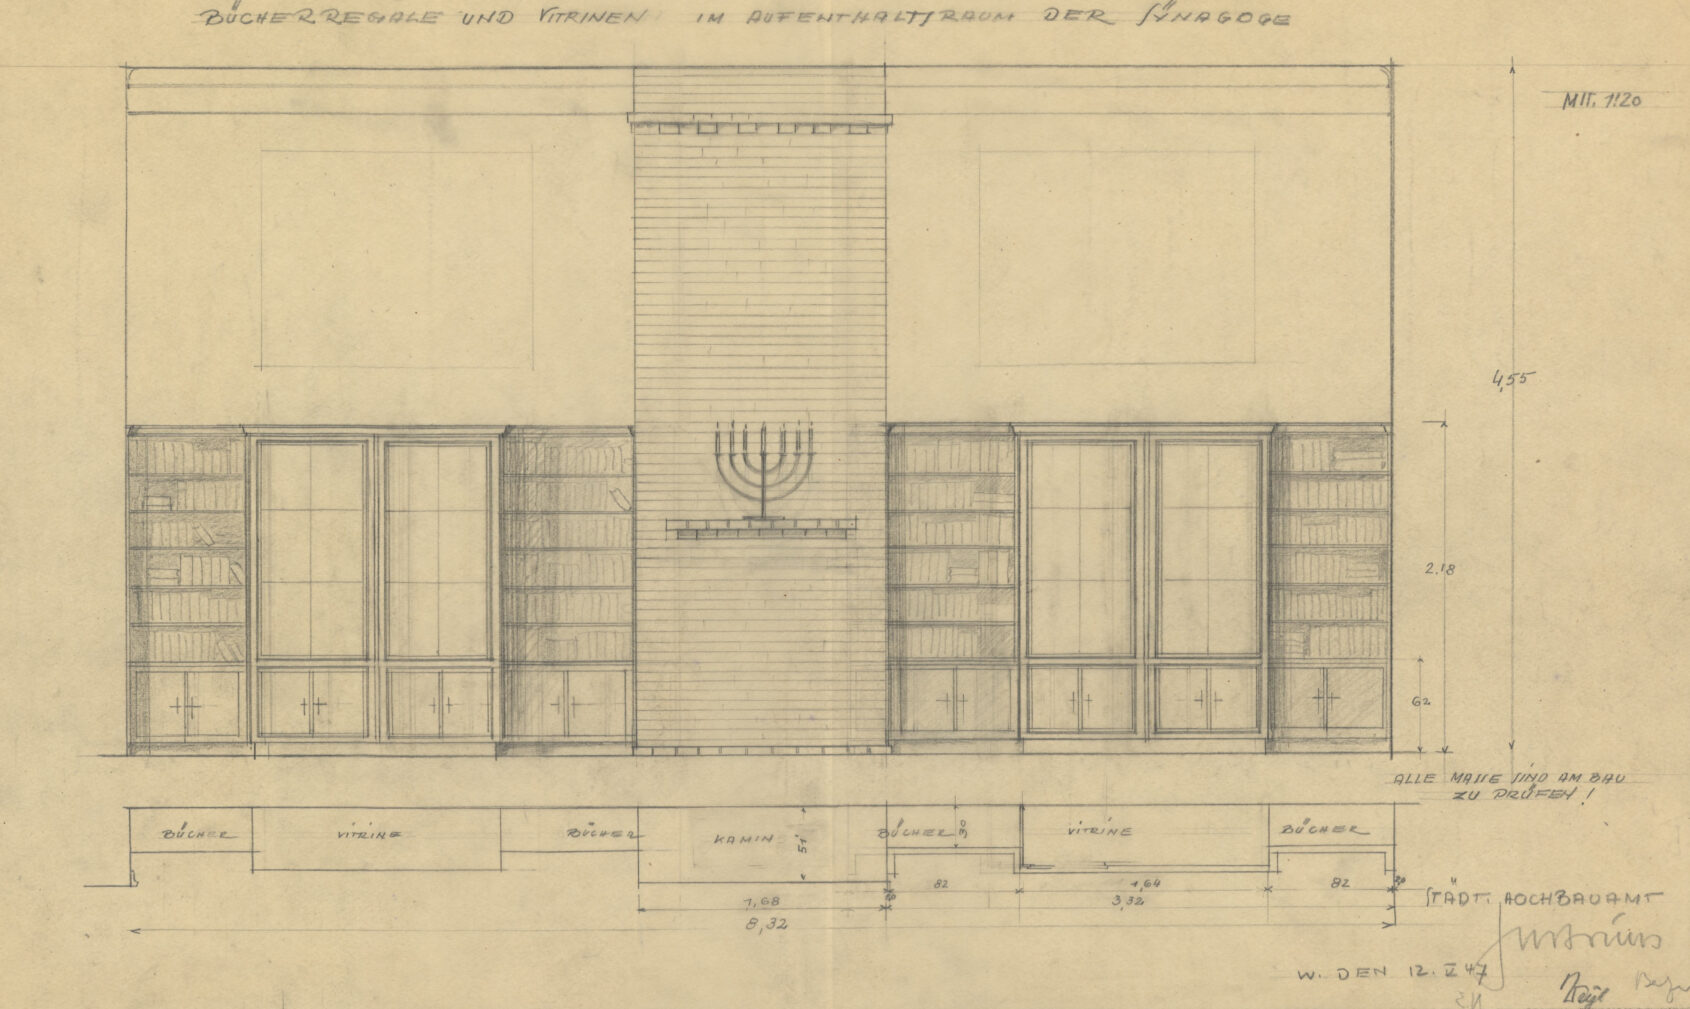 Plans techniques de l’office de l’urbanisme mur de cheminée dans la salle commune, vitrines et bibliothèques, 22 septembre 1947. StadtA WI, ArpRi n° 3